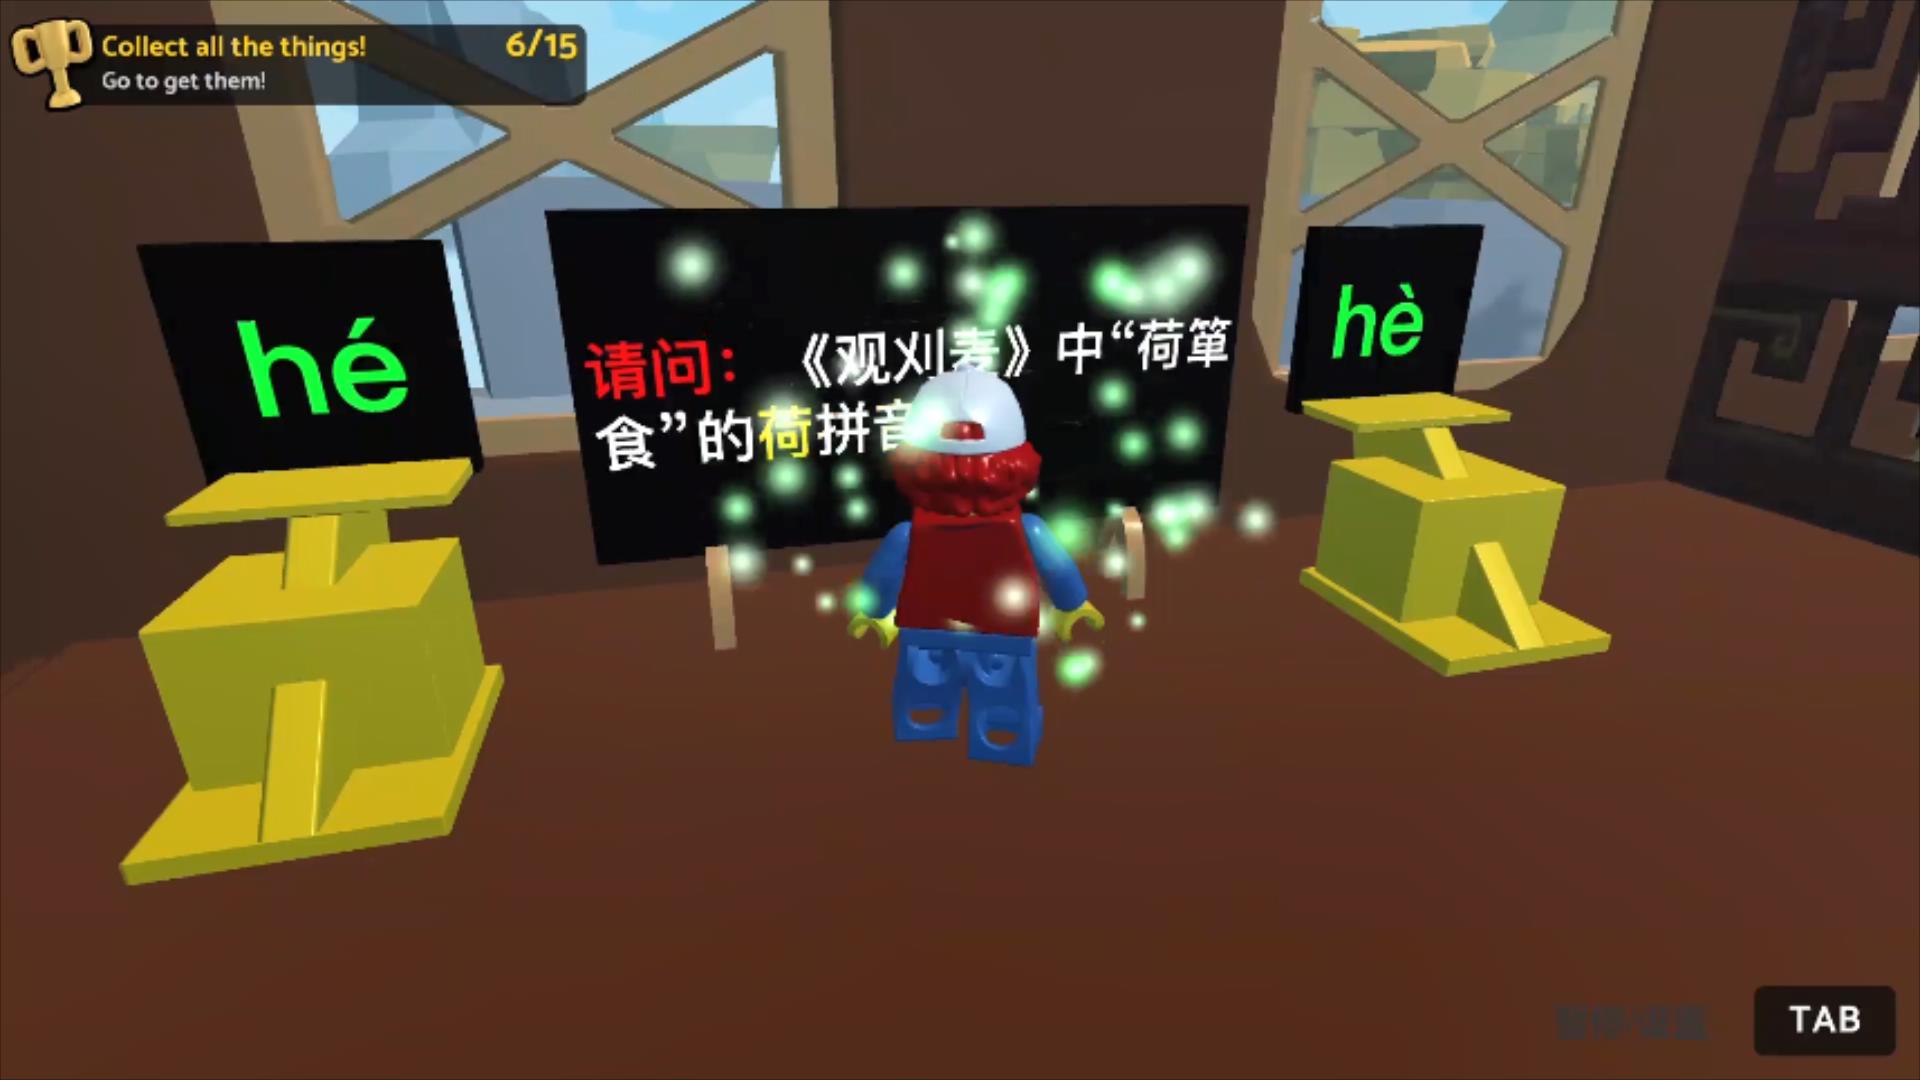 虚拟现实与游戏竞赛作品——言寺